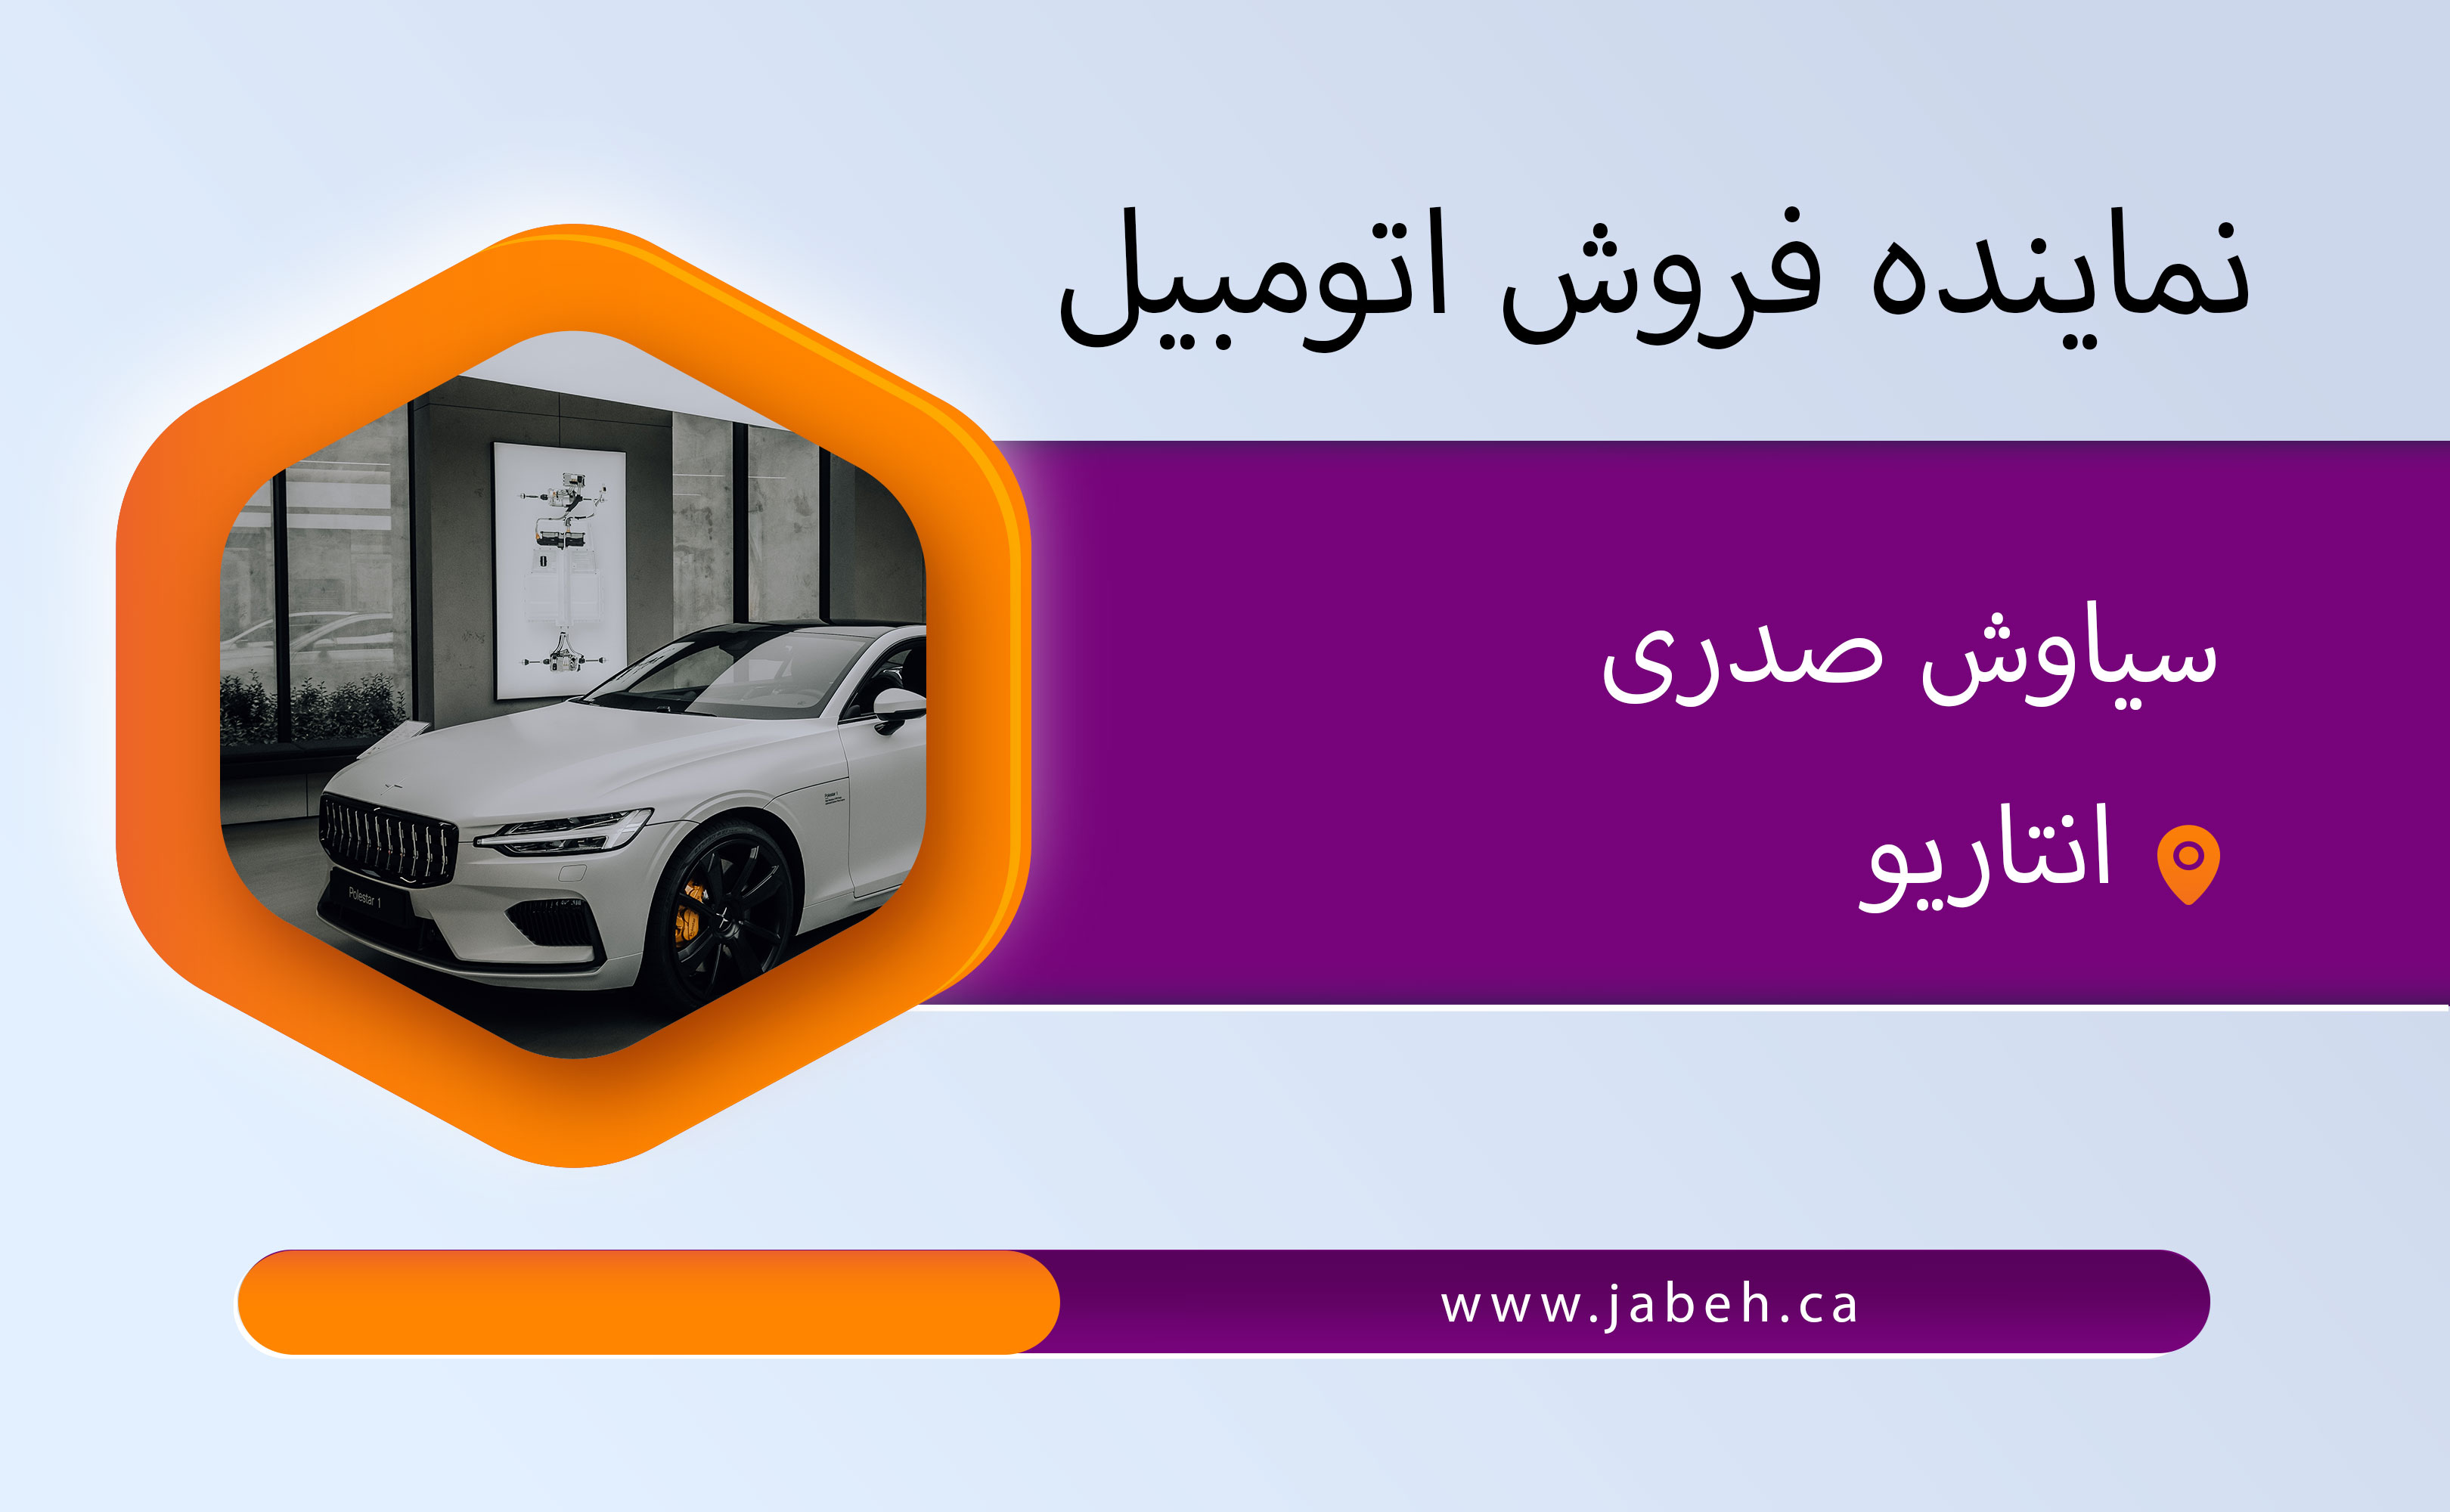 نماینده ایرانی فروش اتومبیل سیاوش صدری در انتاریو